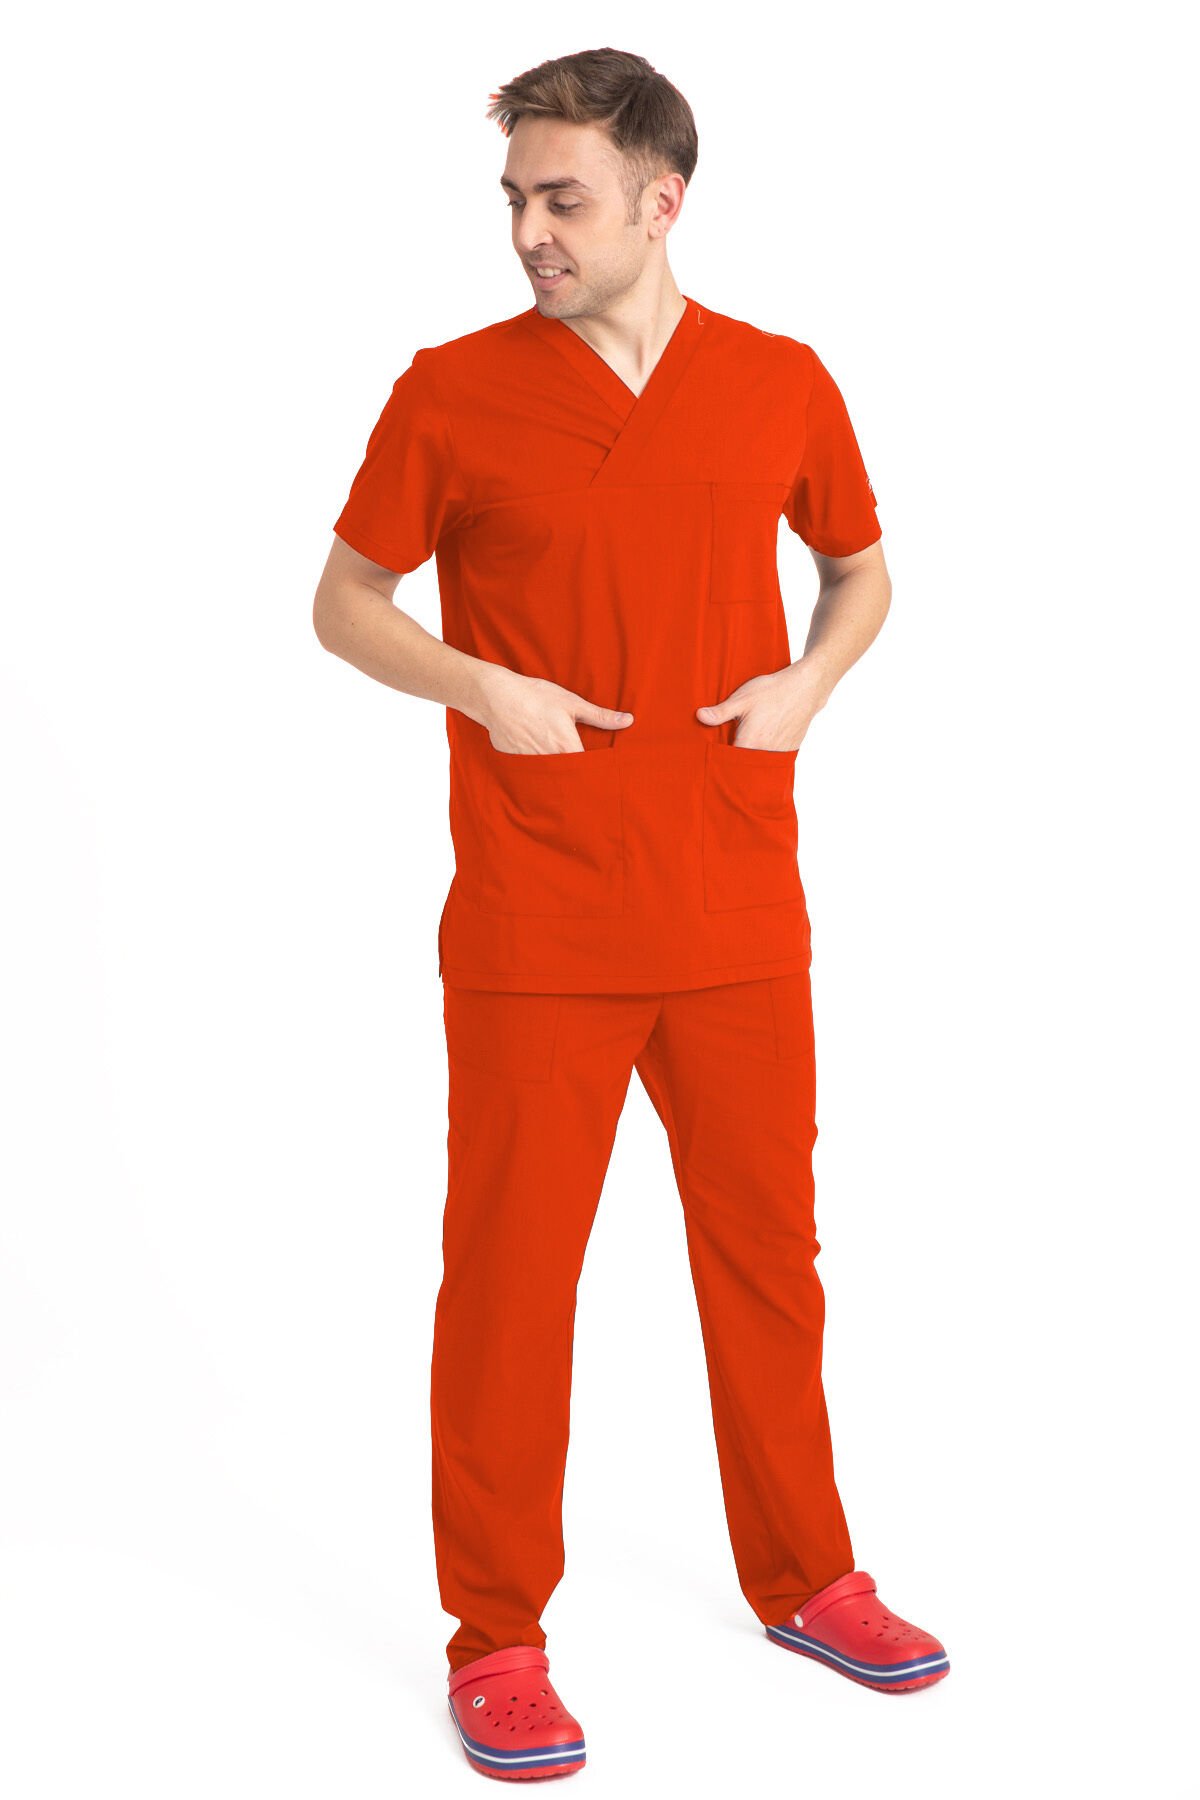 V Cerrahi Yaka Takım Terikoton Kumaş Erkek Kırmızı